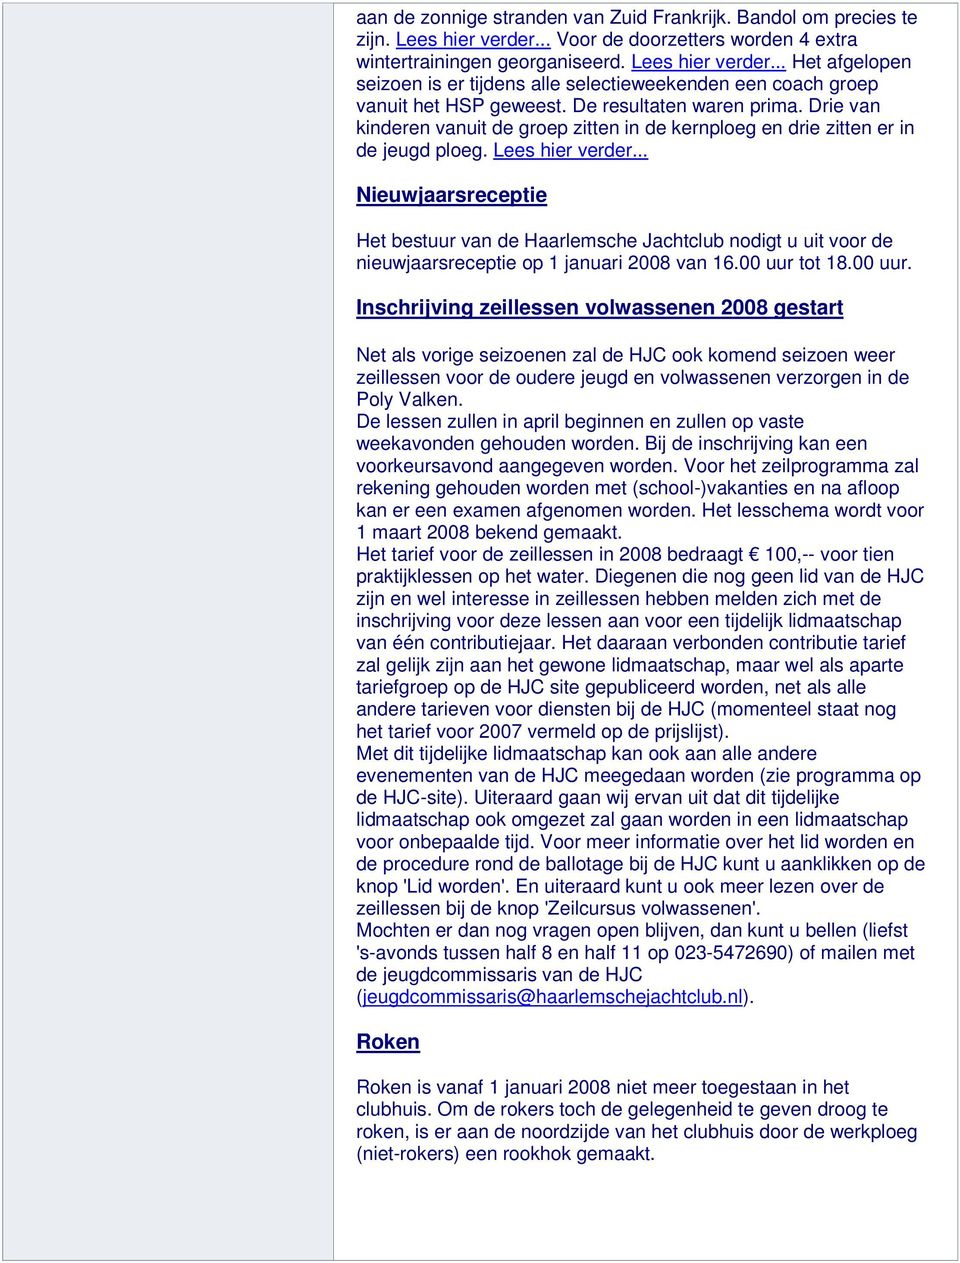 .. Nieuwjaarsreceptie Het bestuur van de Haarlemsche Jachtclub nodigt u uit voor de nieuwjaarsreceptie op 1 januari 2008 van 16.00 uur 